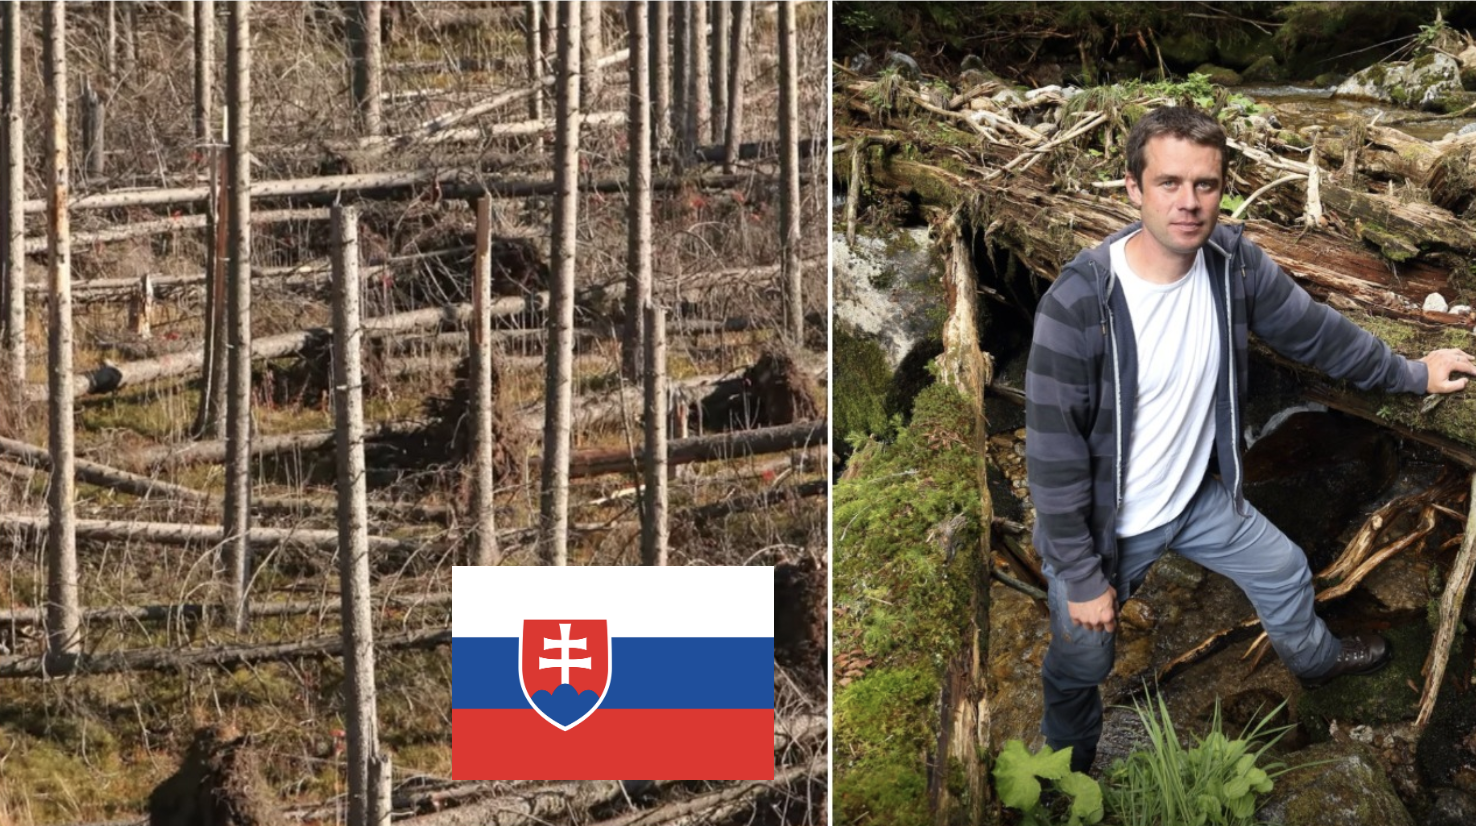 Slovenský ochranár poslal premiérovi video, ktoré by ste si mali pozrieť aj vy! Lesy vám nepatria!